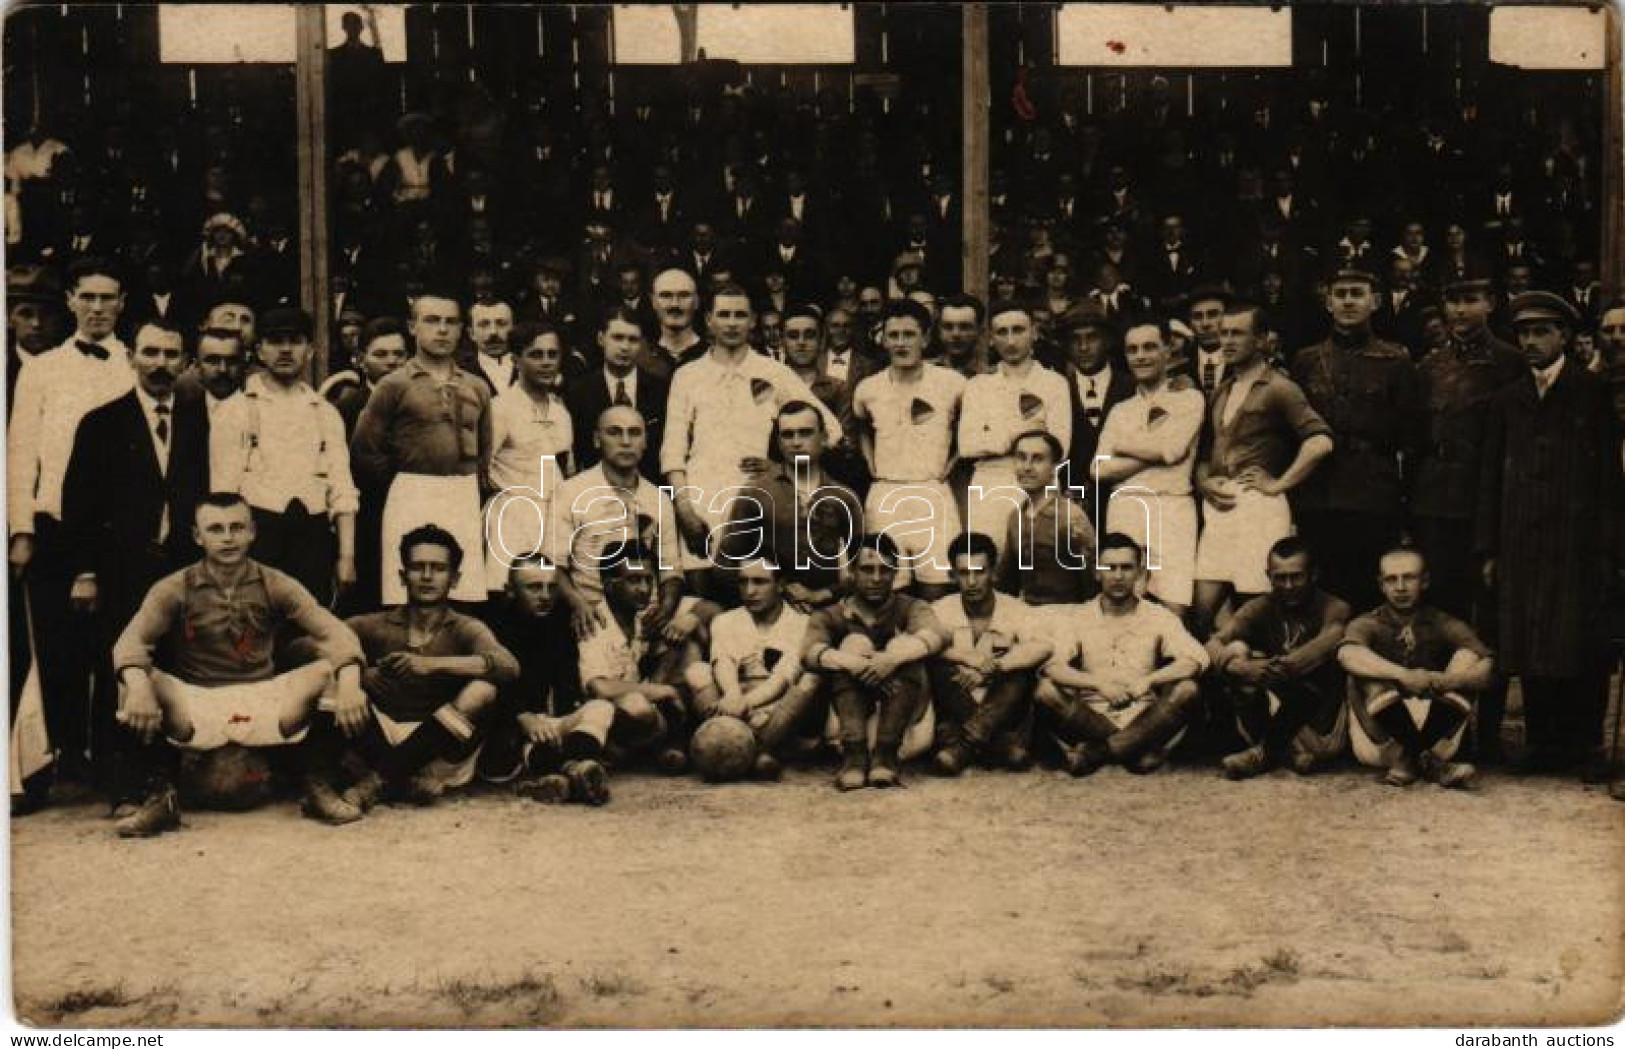 * T2/T3 1921 Békéscsaba Előre Labdarúgócsapat, Focisták, Futball / Hungarian Football Team. Róna és Fehér Photo (fl) - Unclassified